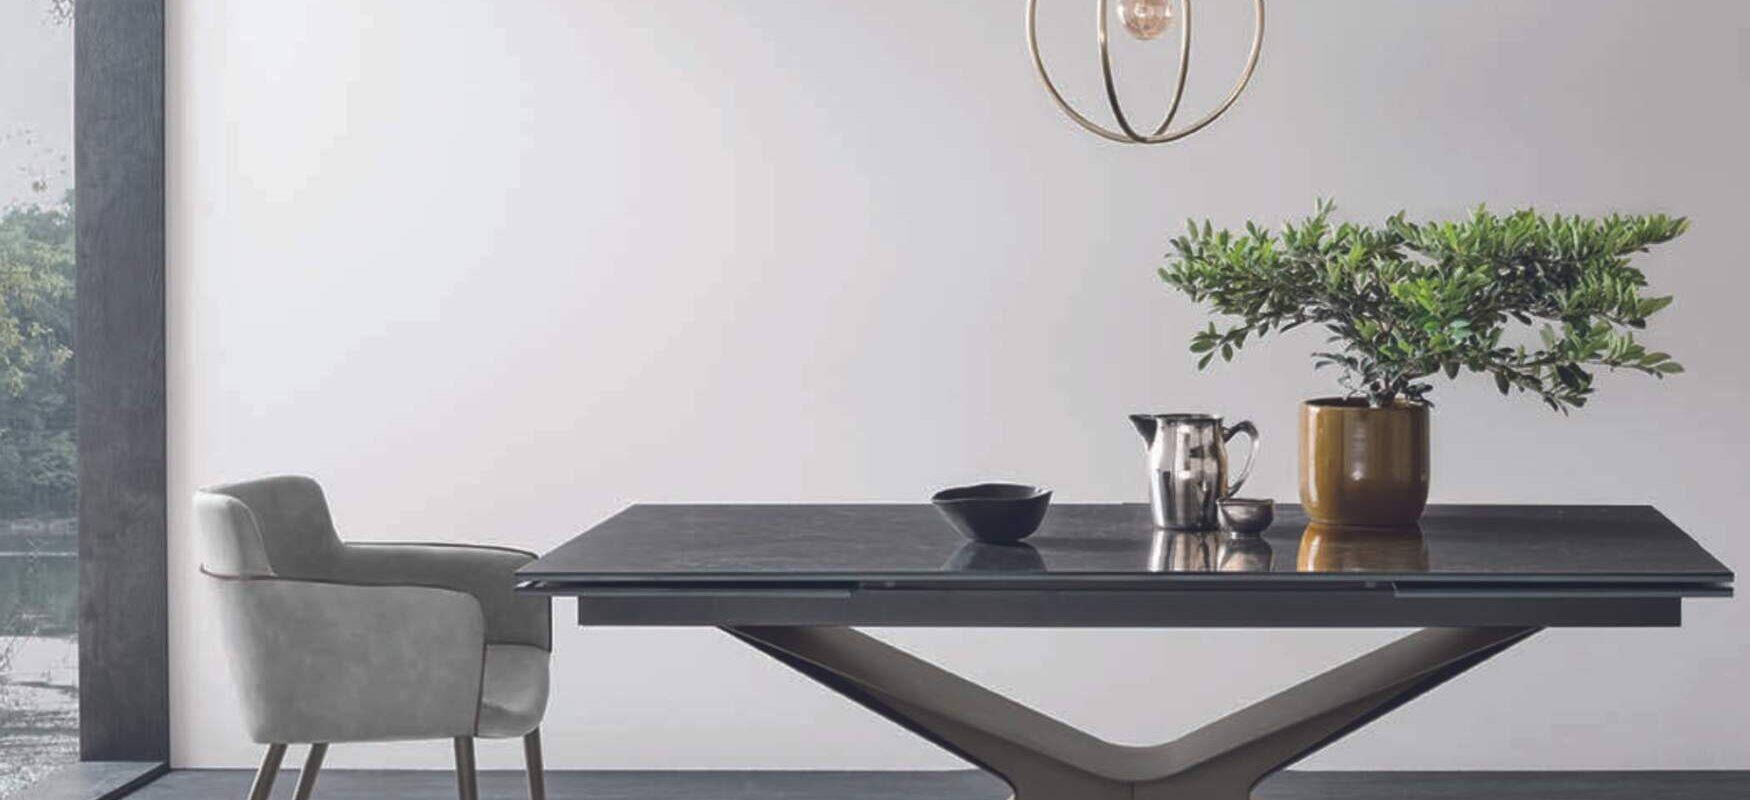 dining-room-design-etkezo-szekek-asztalok-kiegeszitok-innoconceptdesign-blog